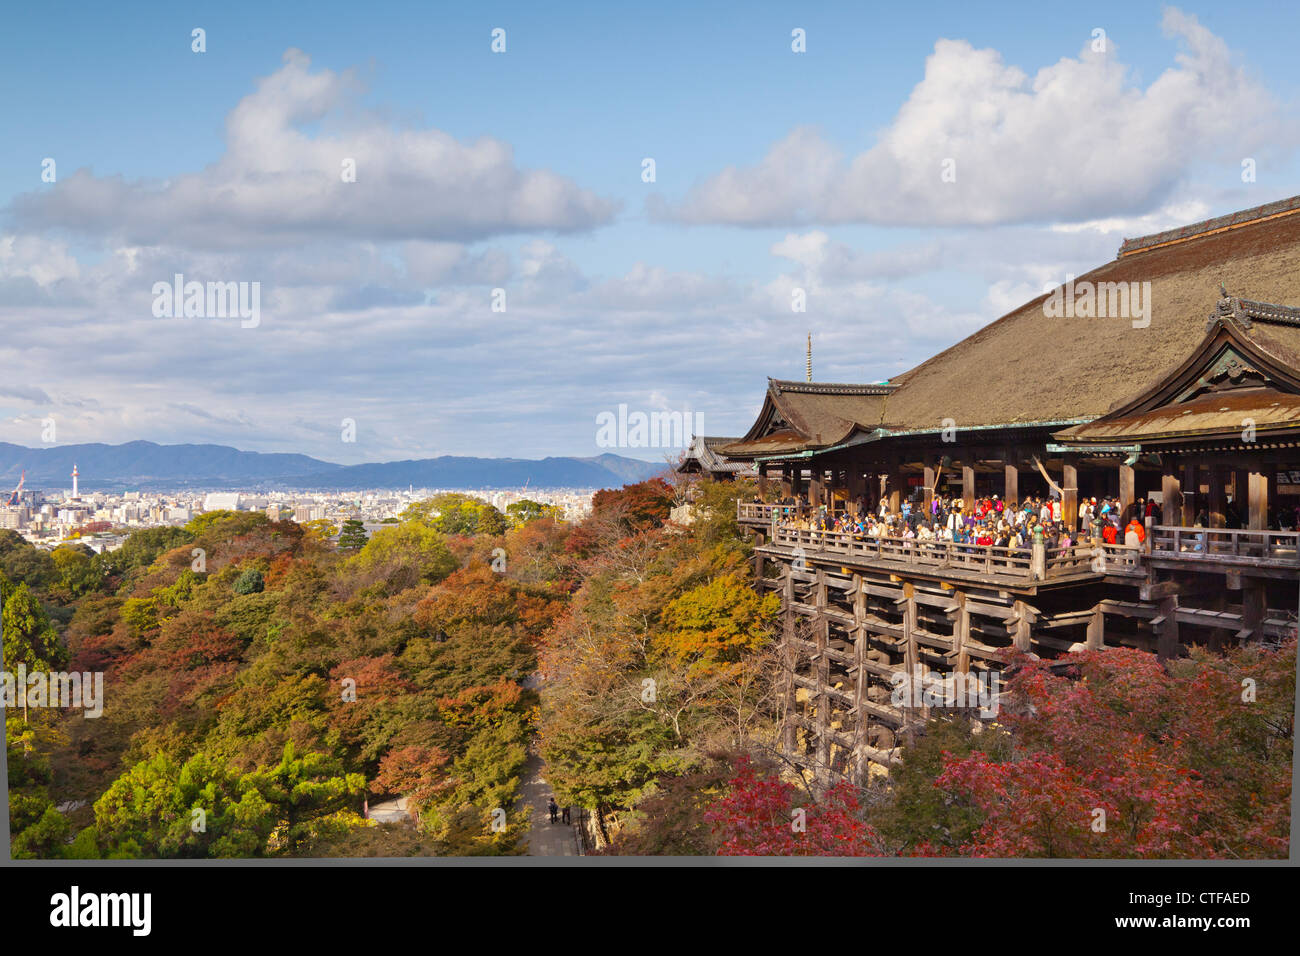 El templo de Kiyomizu-dera en Kyoto es uno de los sitios más visitados de Japón. Foto de stock